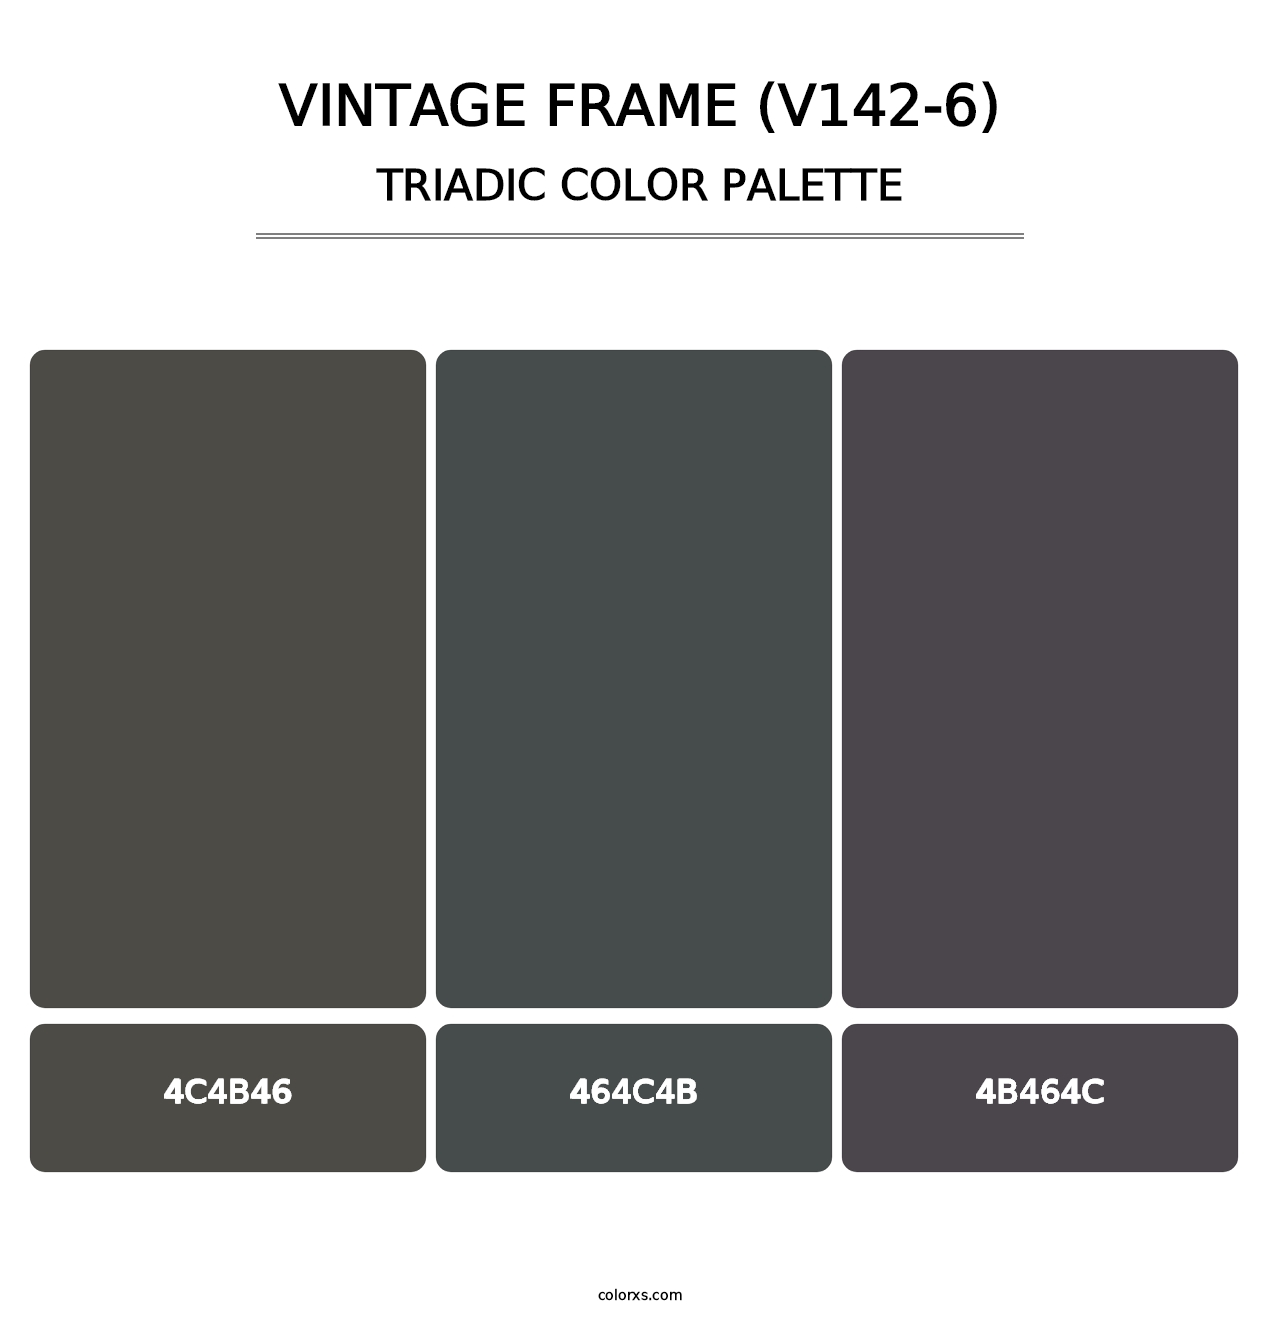 Vintage Frame (V142-6) - Triadic Color Palette